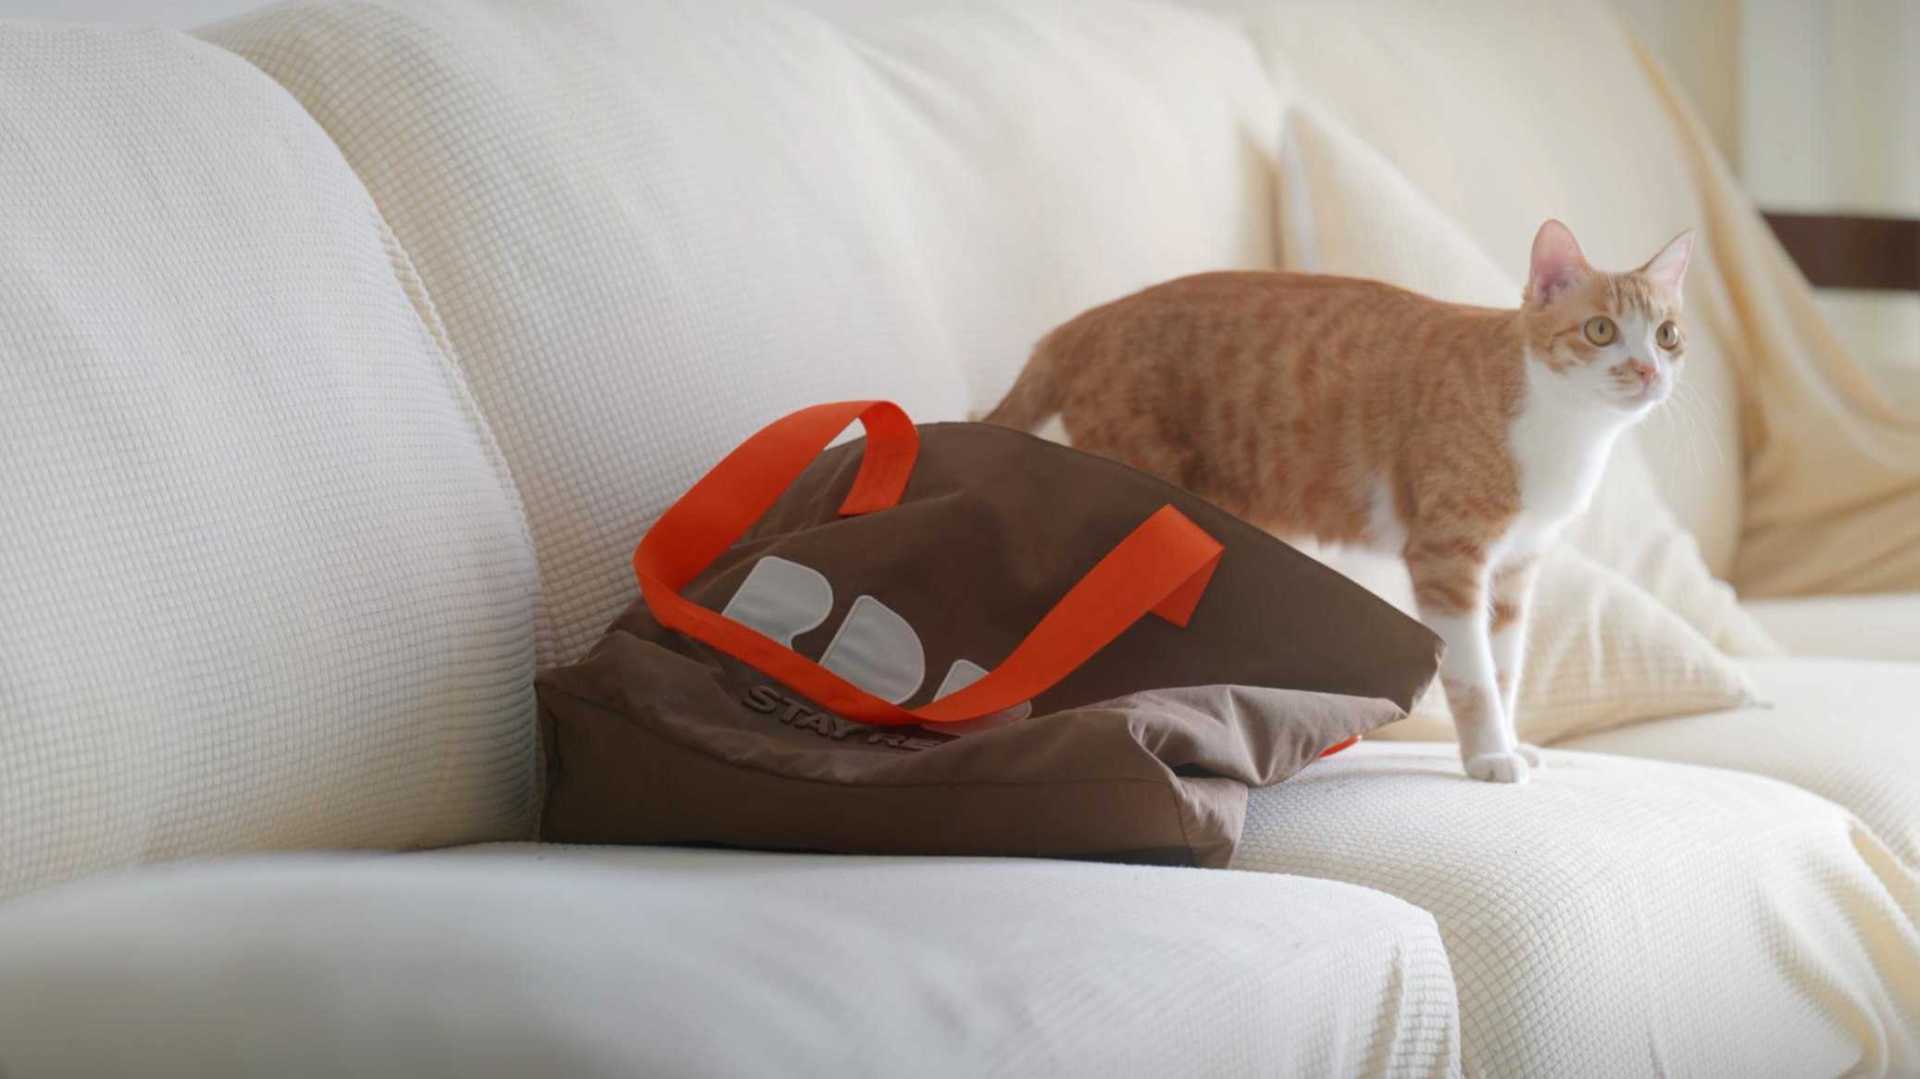 广告 | RDBK |  猫猫与包包